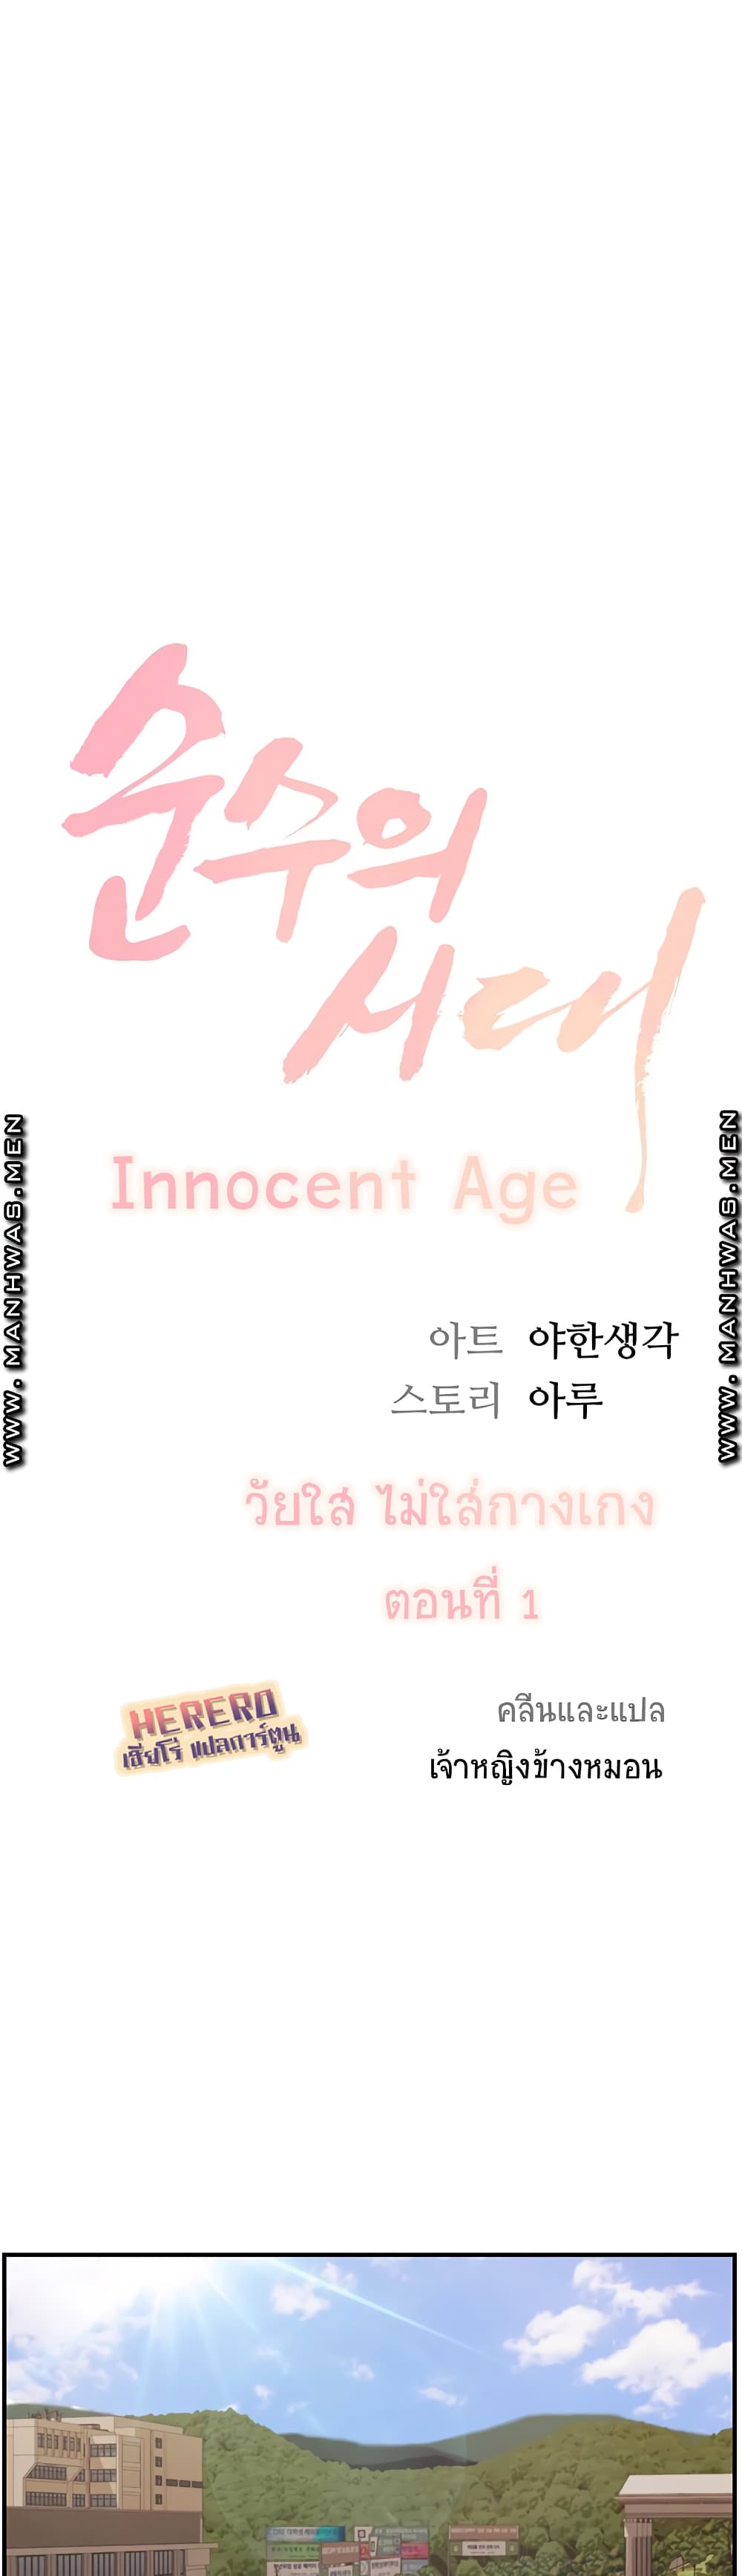 Innocent Age 1 (6)